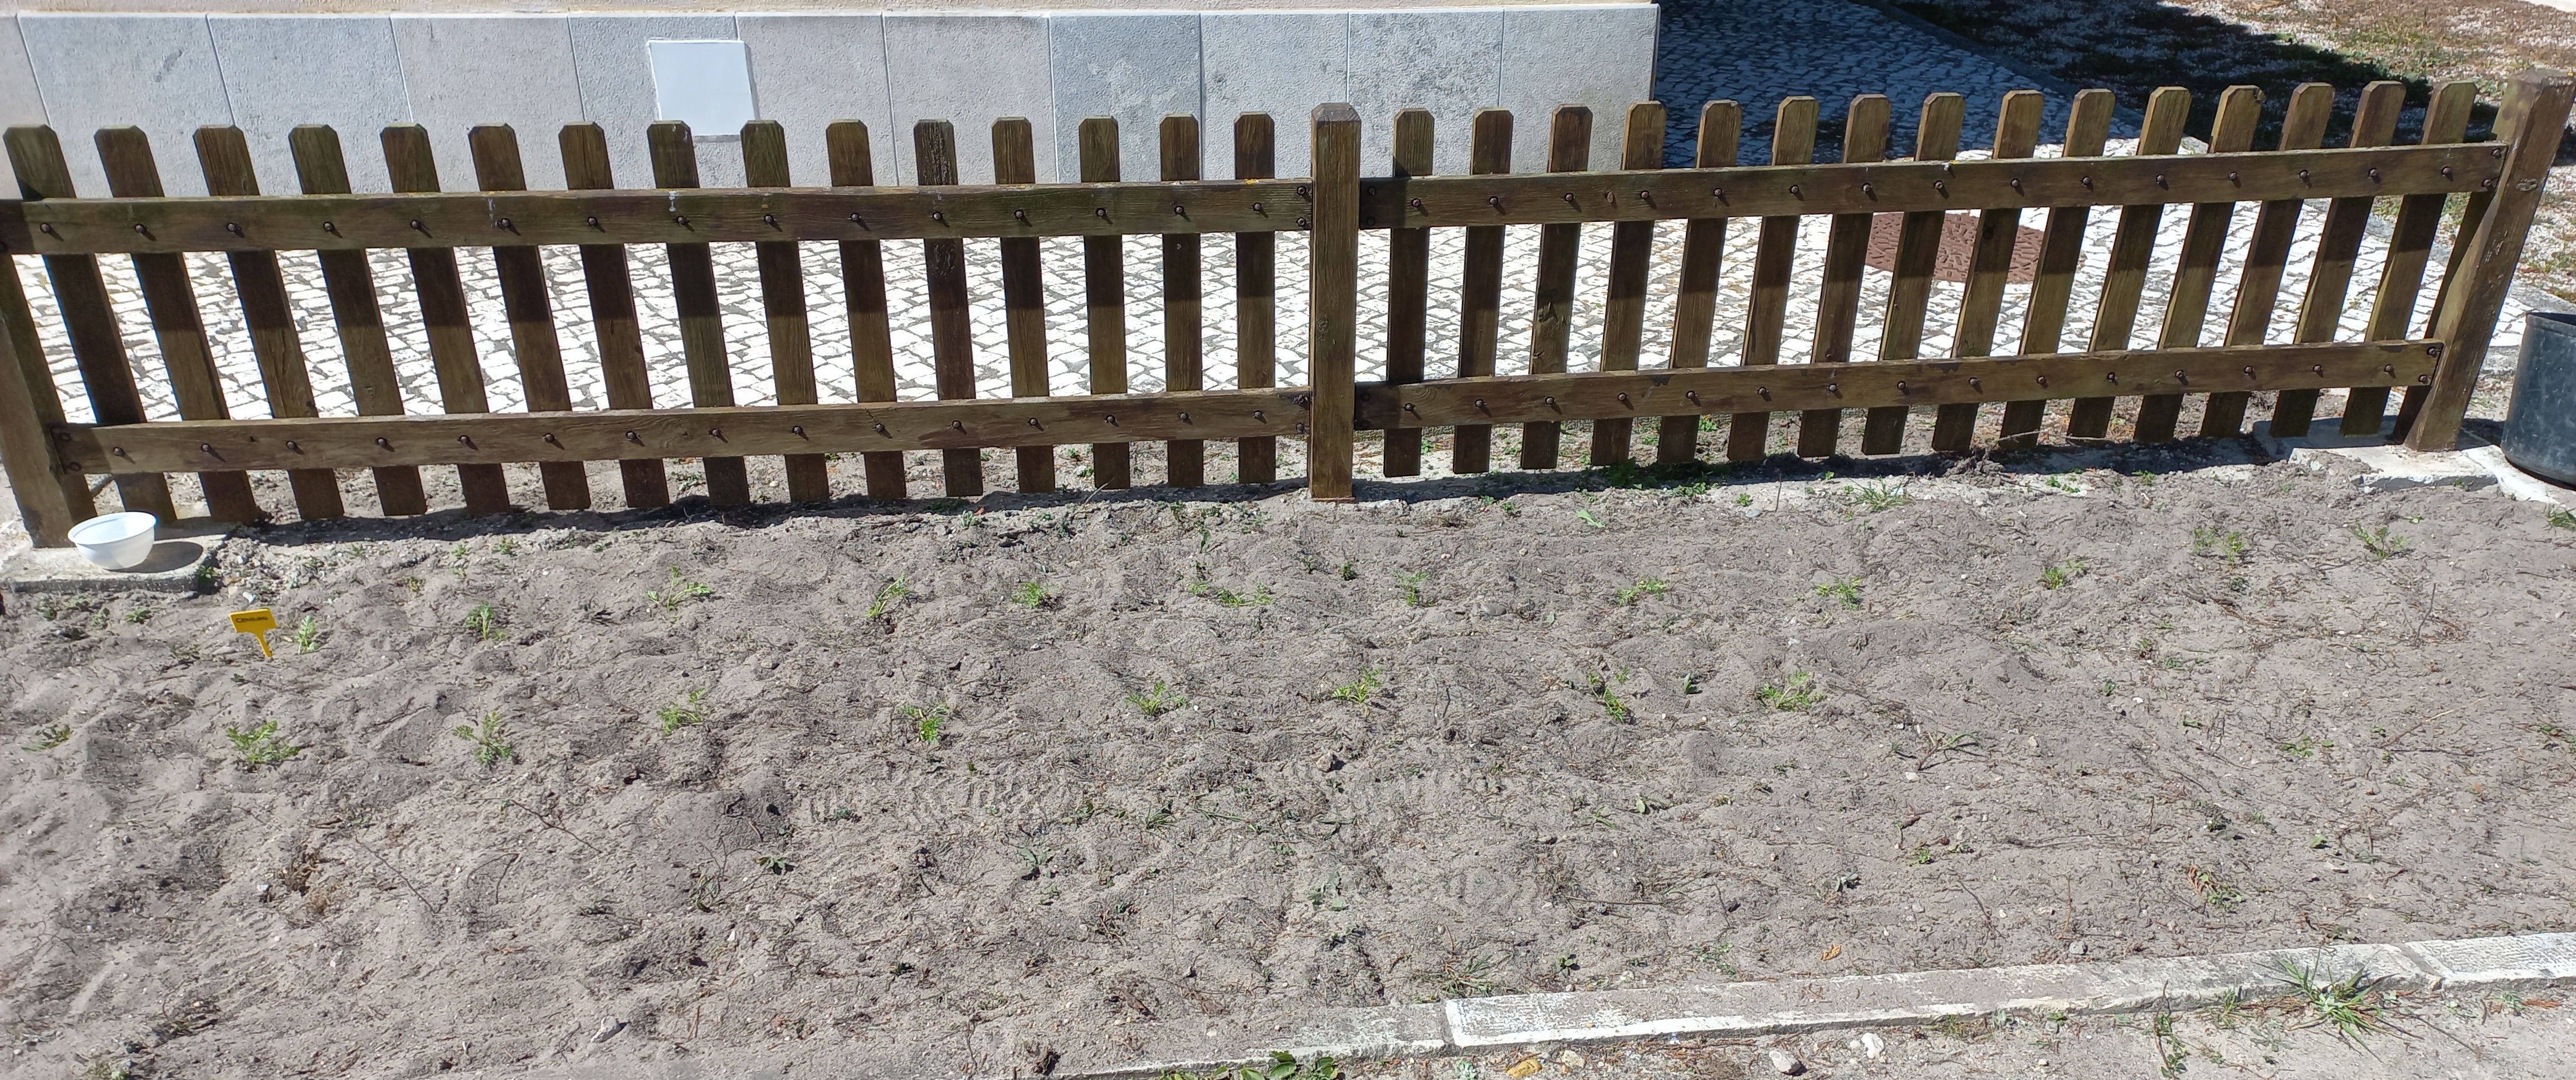 Canteiro com cenouras plantadas em Março. Sistema de rega gota a gota.